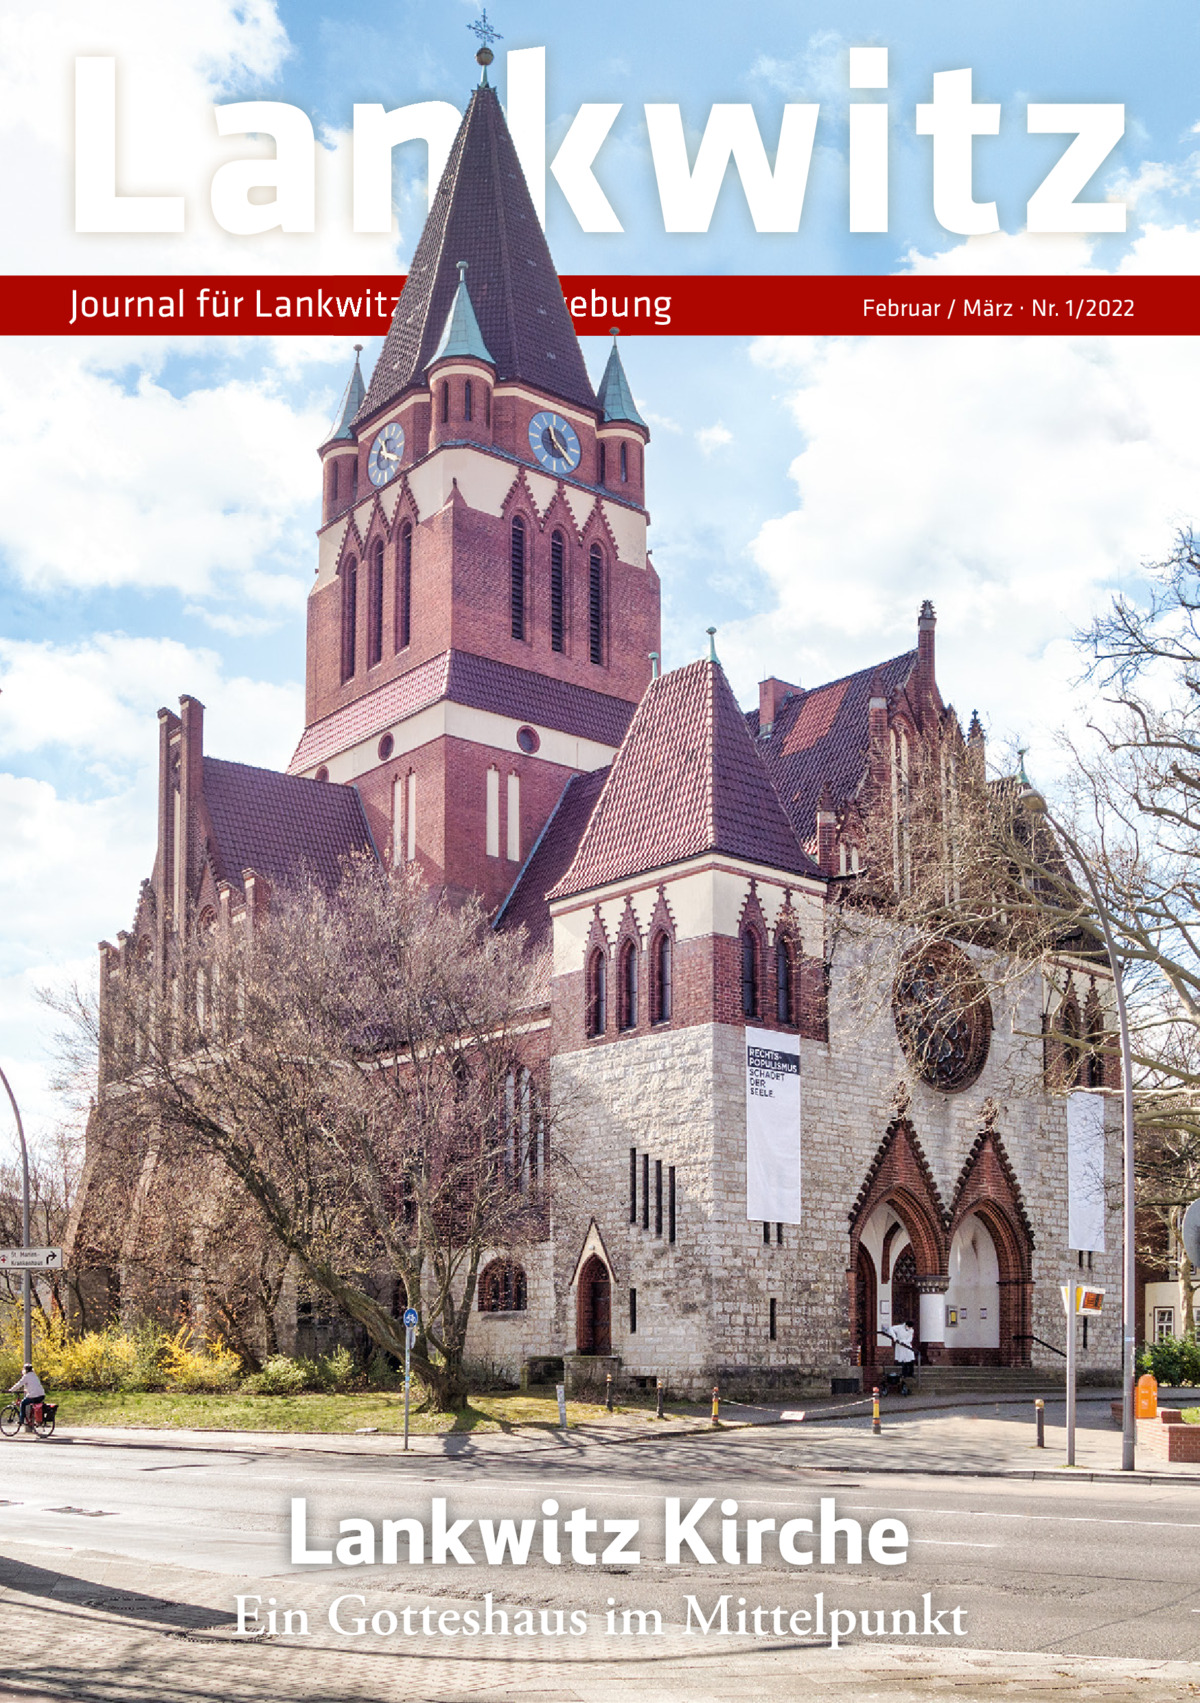 Lankwitz Journal für Lankwitz und Umgebung  Februar / März · Nr. 1/2022  Lankwitz Kirche  Ein Gotteshaus im Mittelpunkt